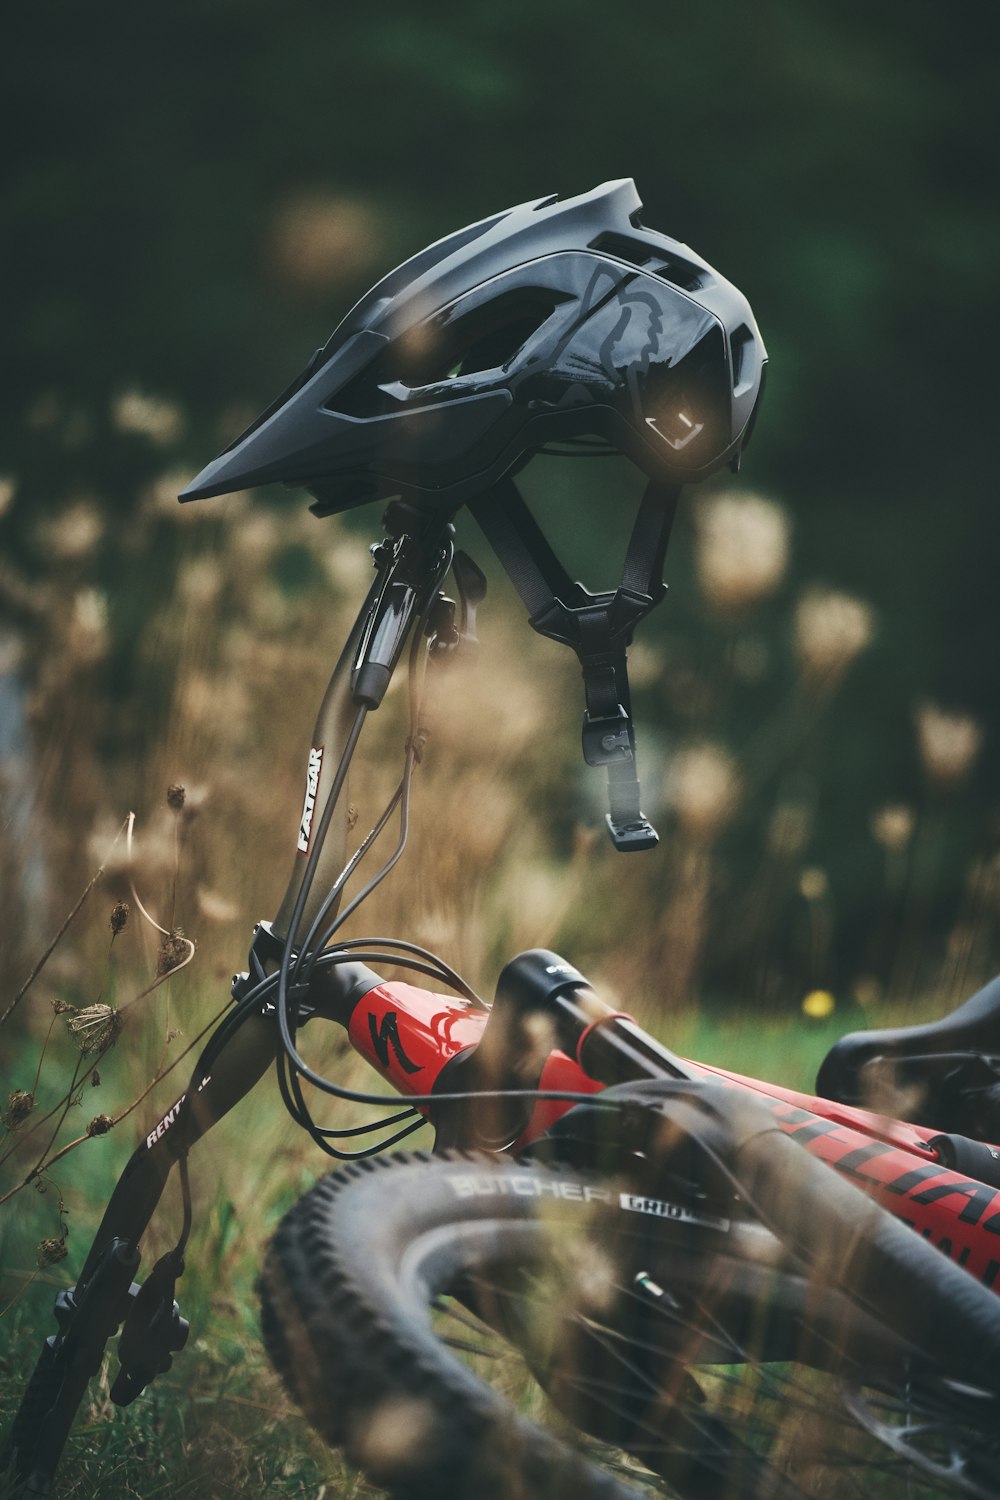 Casco de bicicleta negro y rojo sobre hierba marrón durante el día